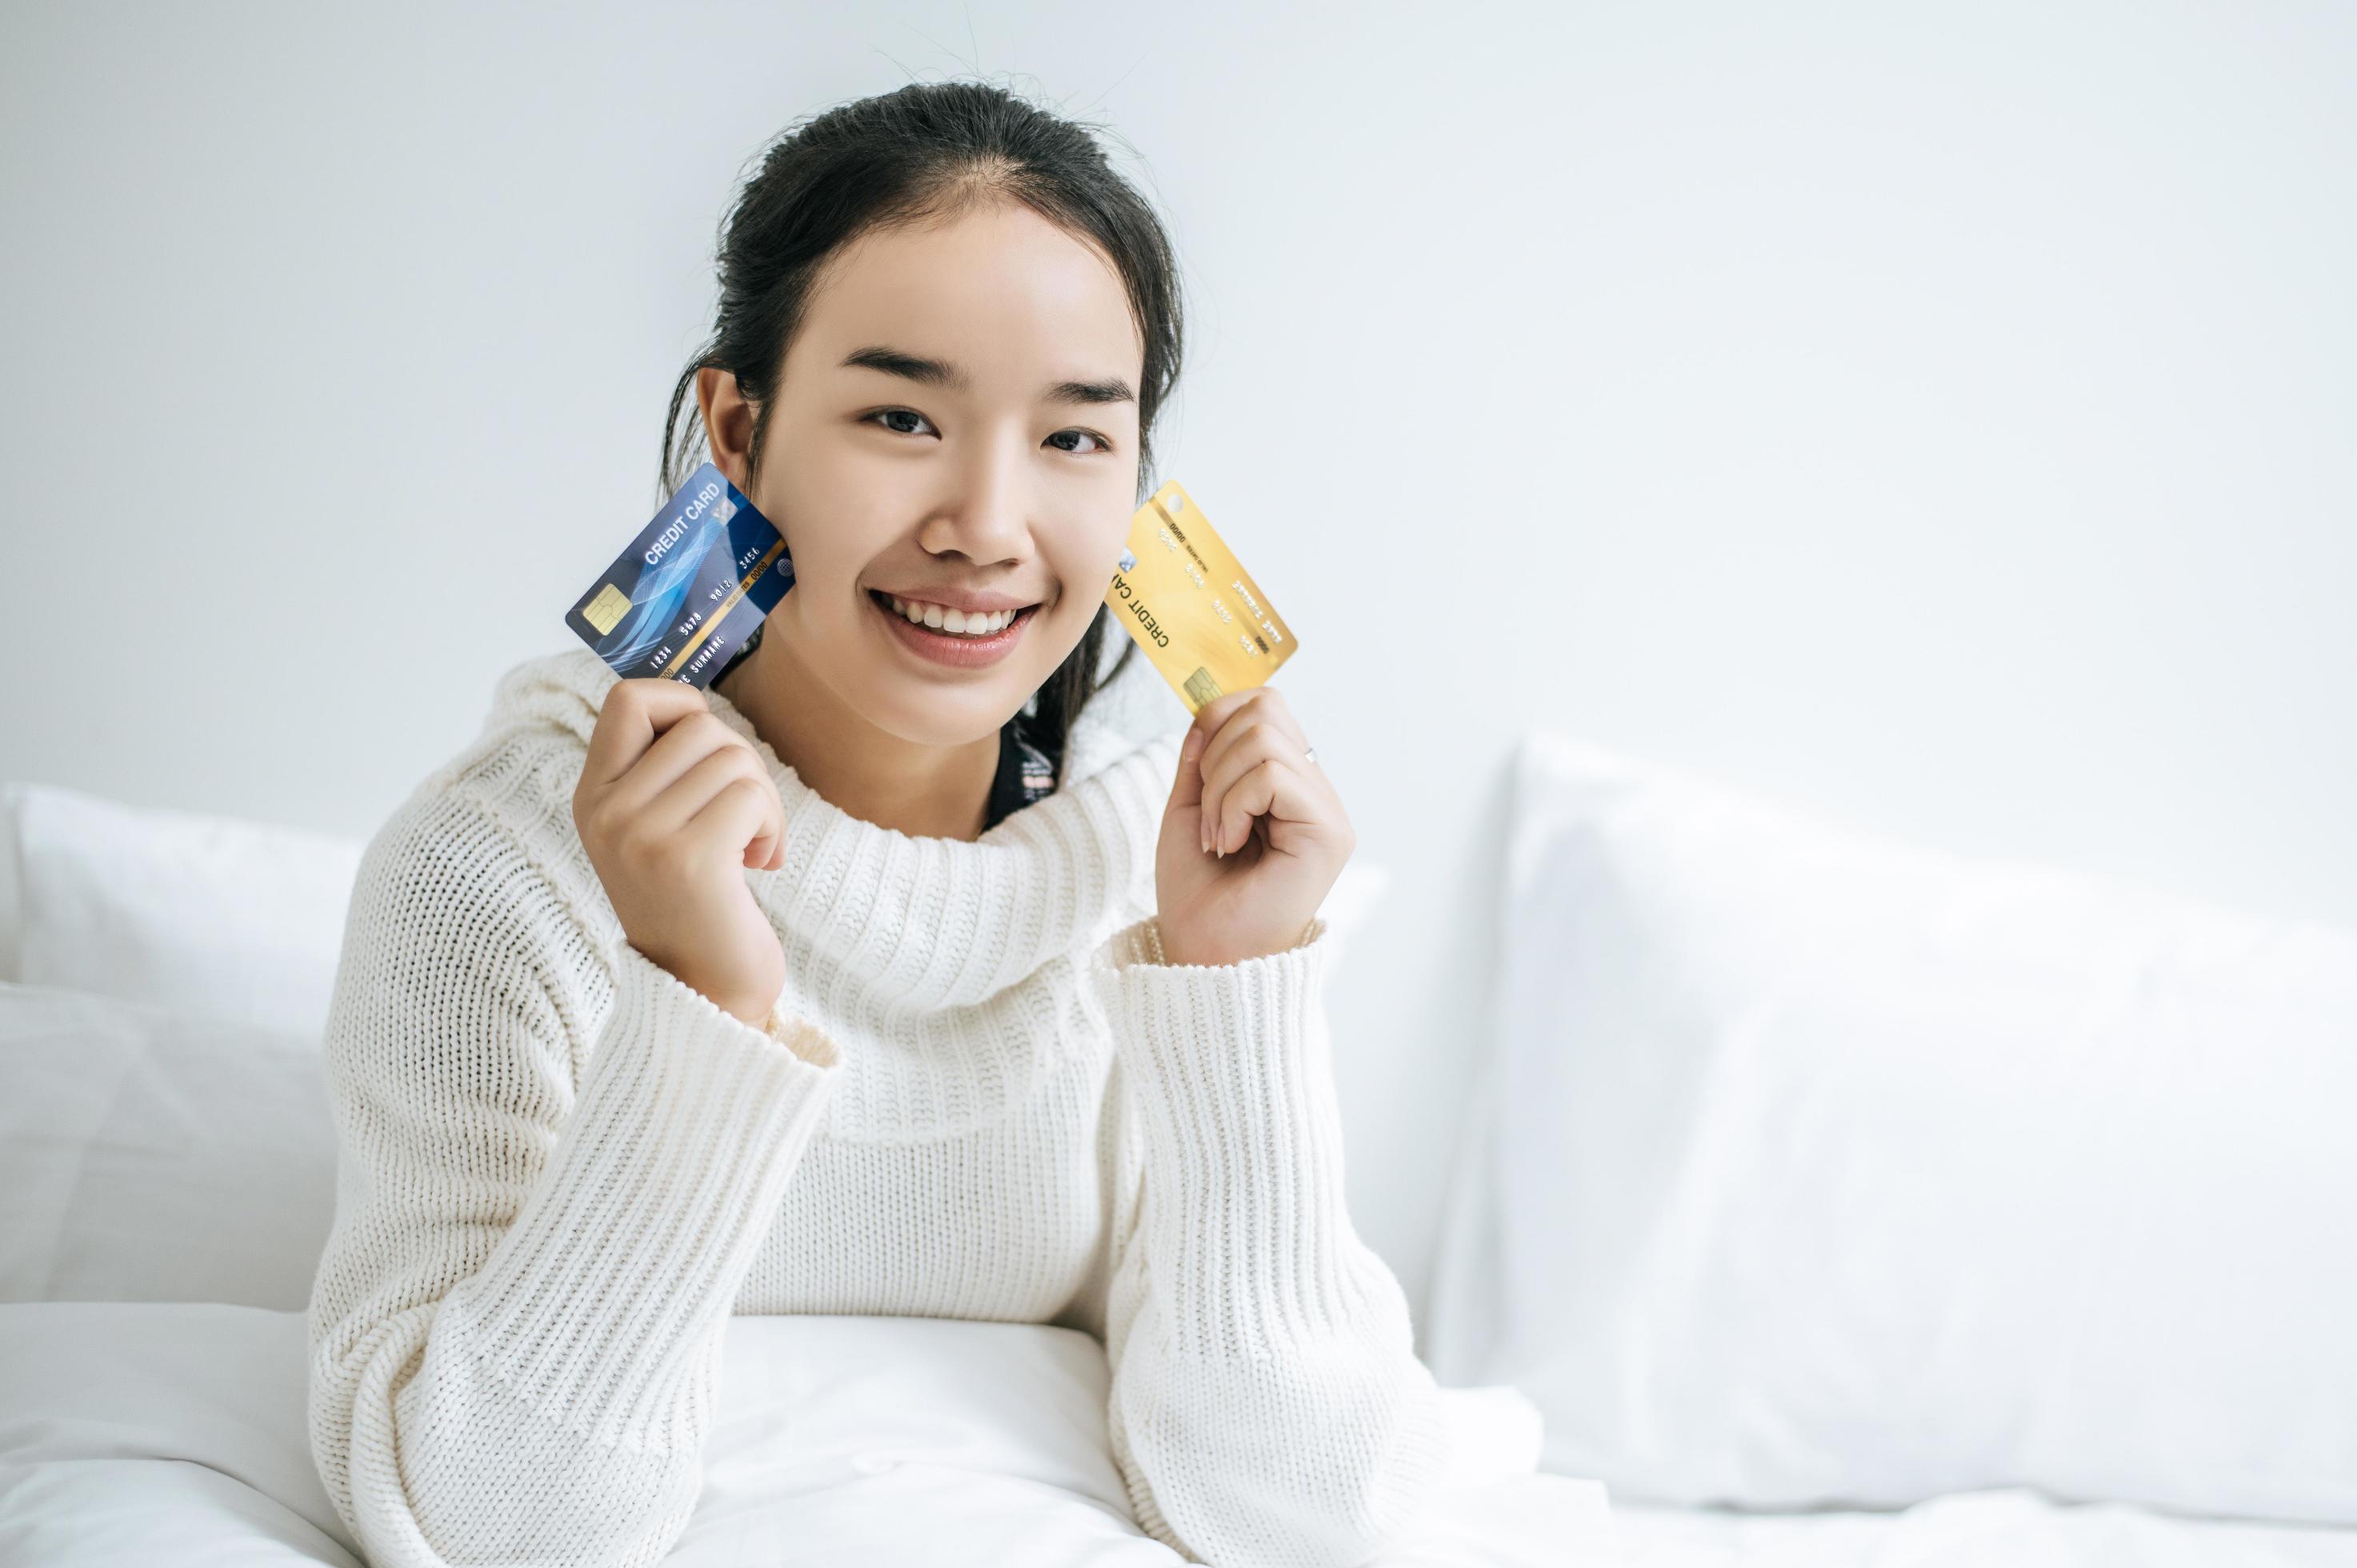 jonge vrouw met een creditcard lachend op bed foto